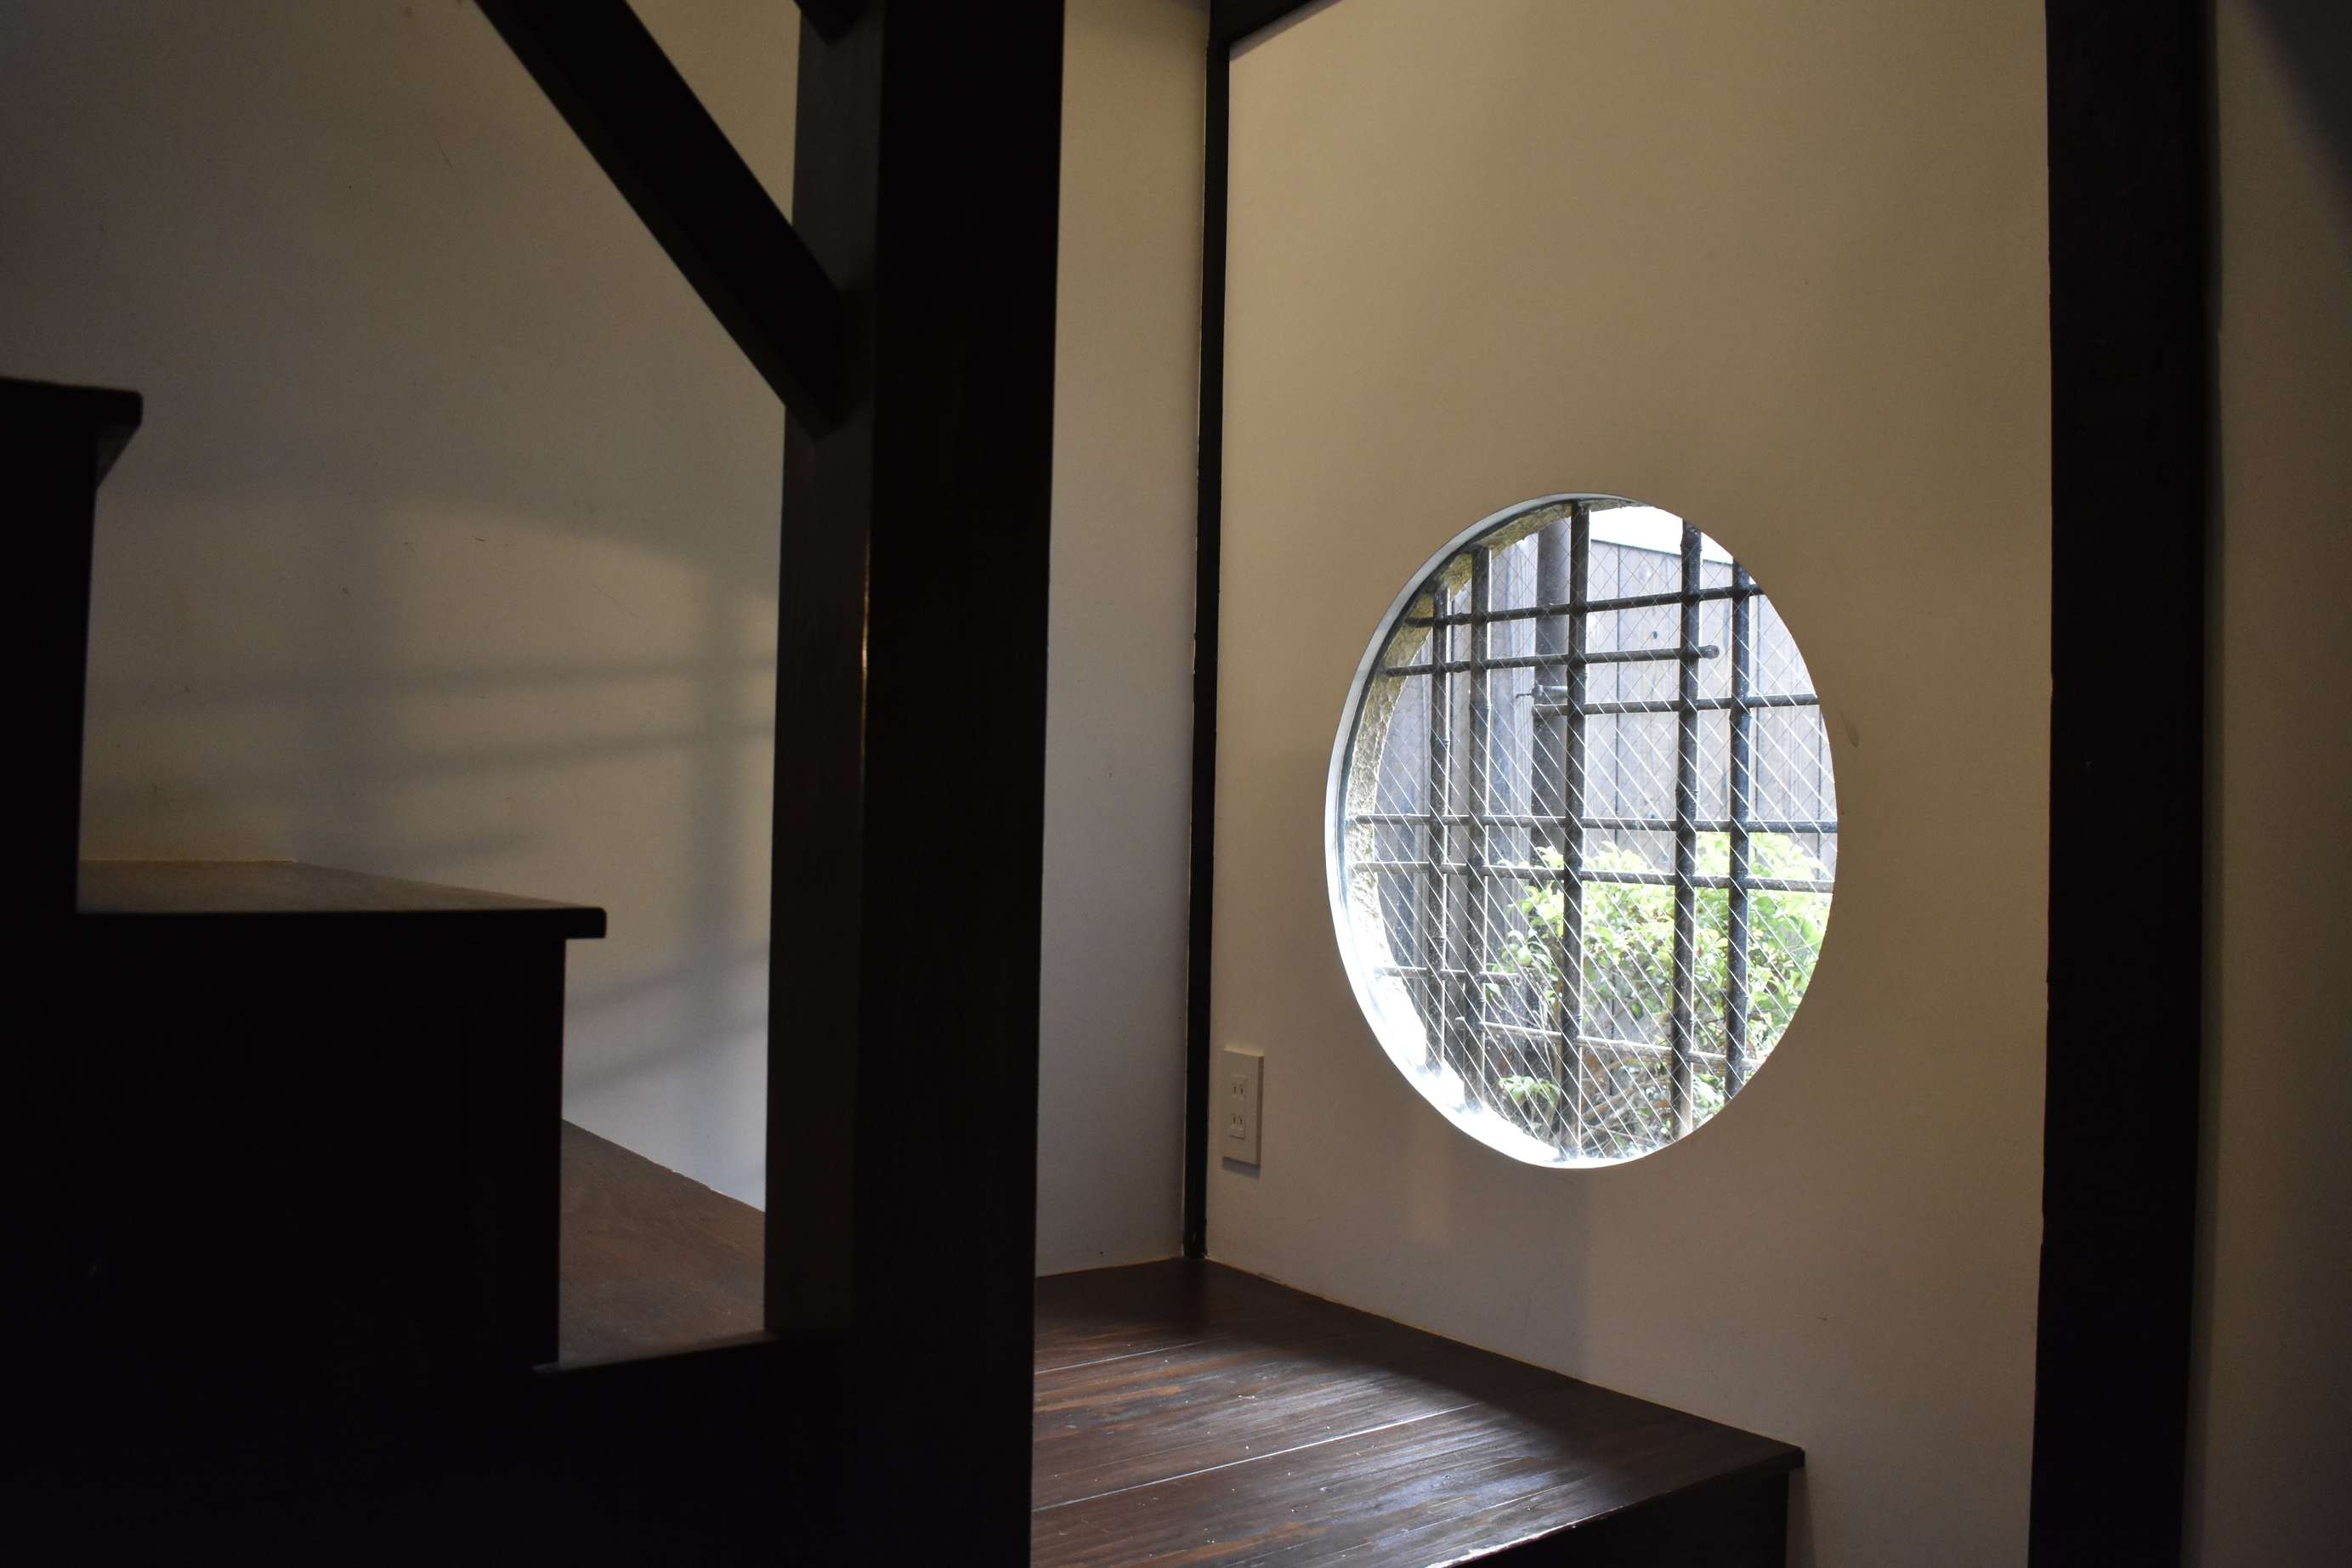 【通常プラン】京都らしい”箱階段”が印象的な一棟貸切京町家★烏丸御池から徒歩10分